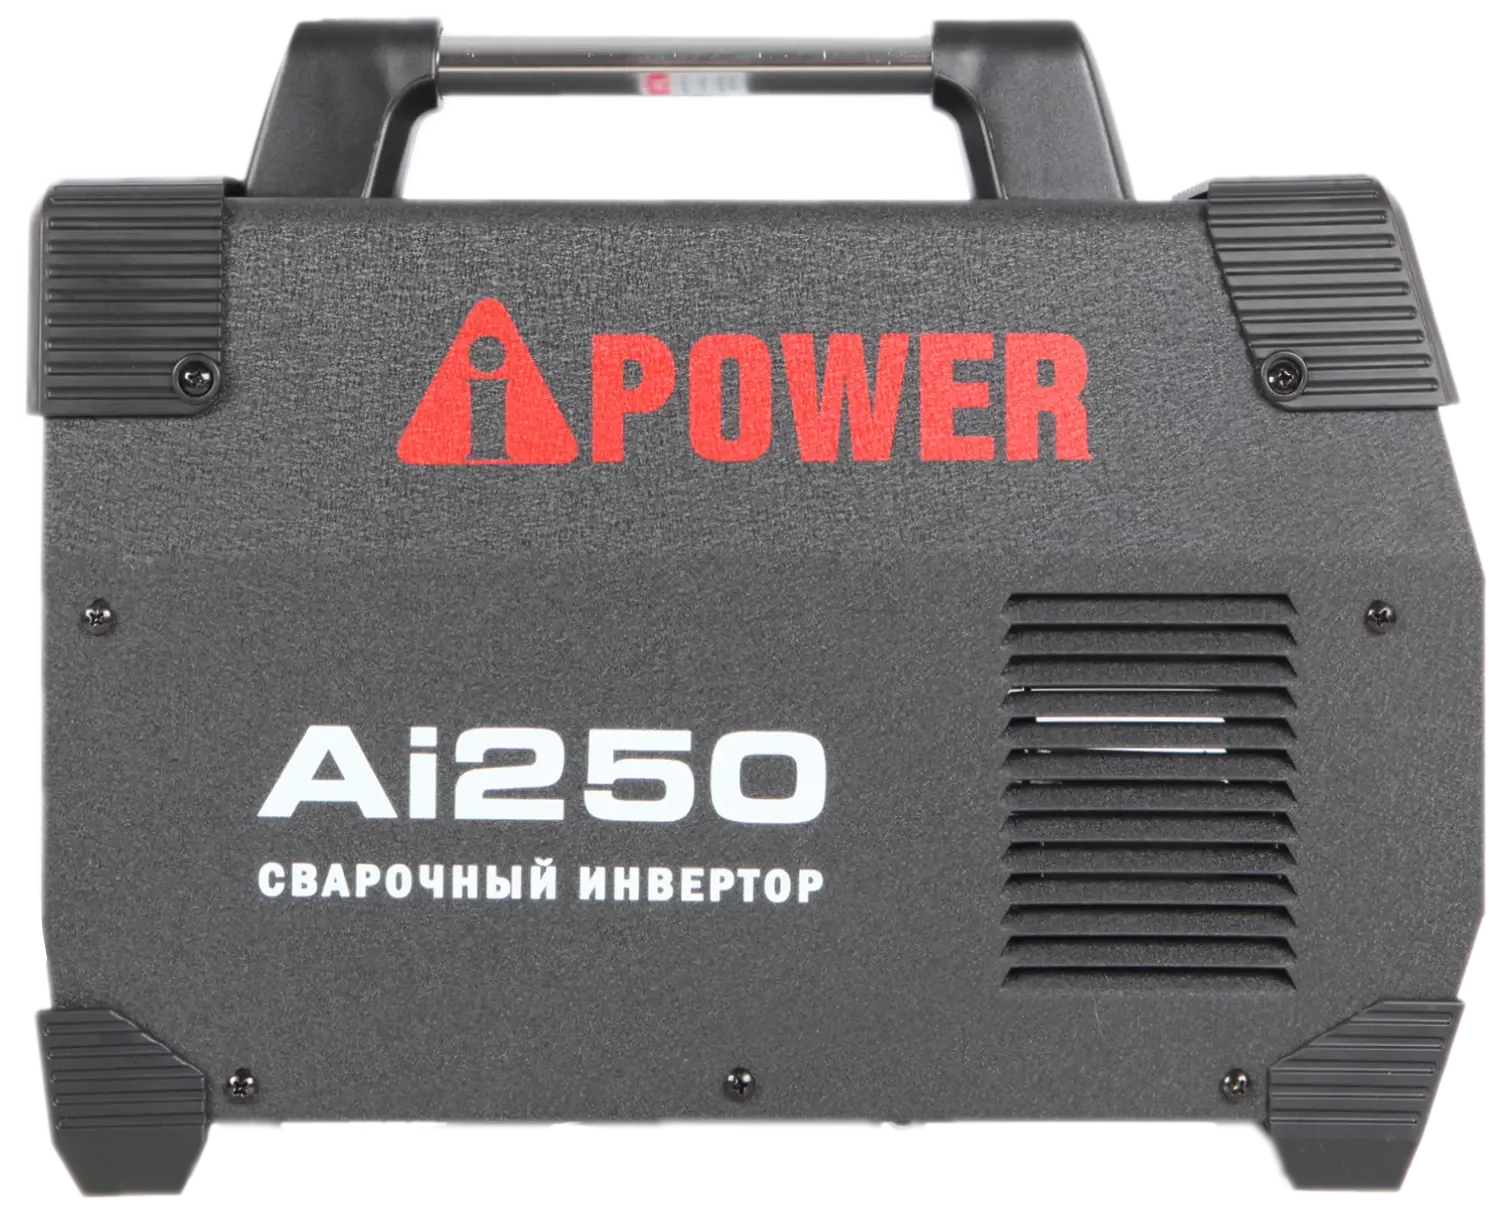 Инверторный сварочный аппарат A-IPOWER AI250 Гарантия 4 года Официальный магазин